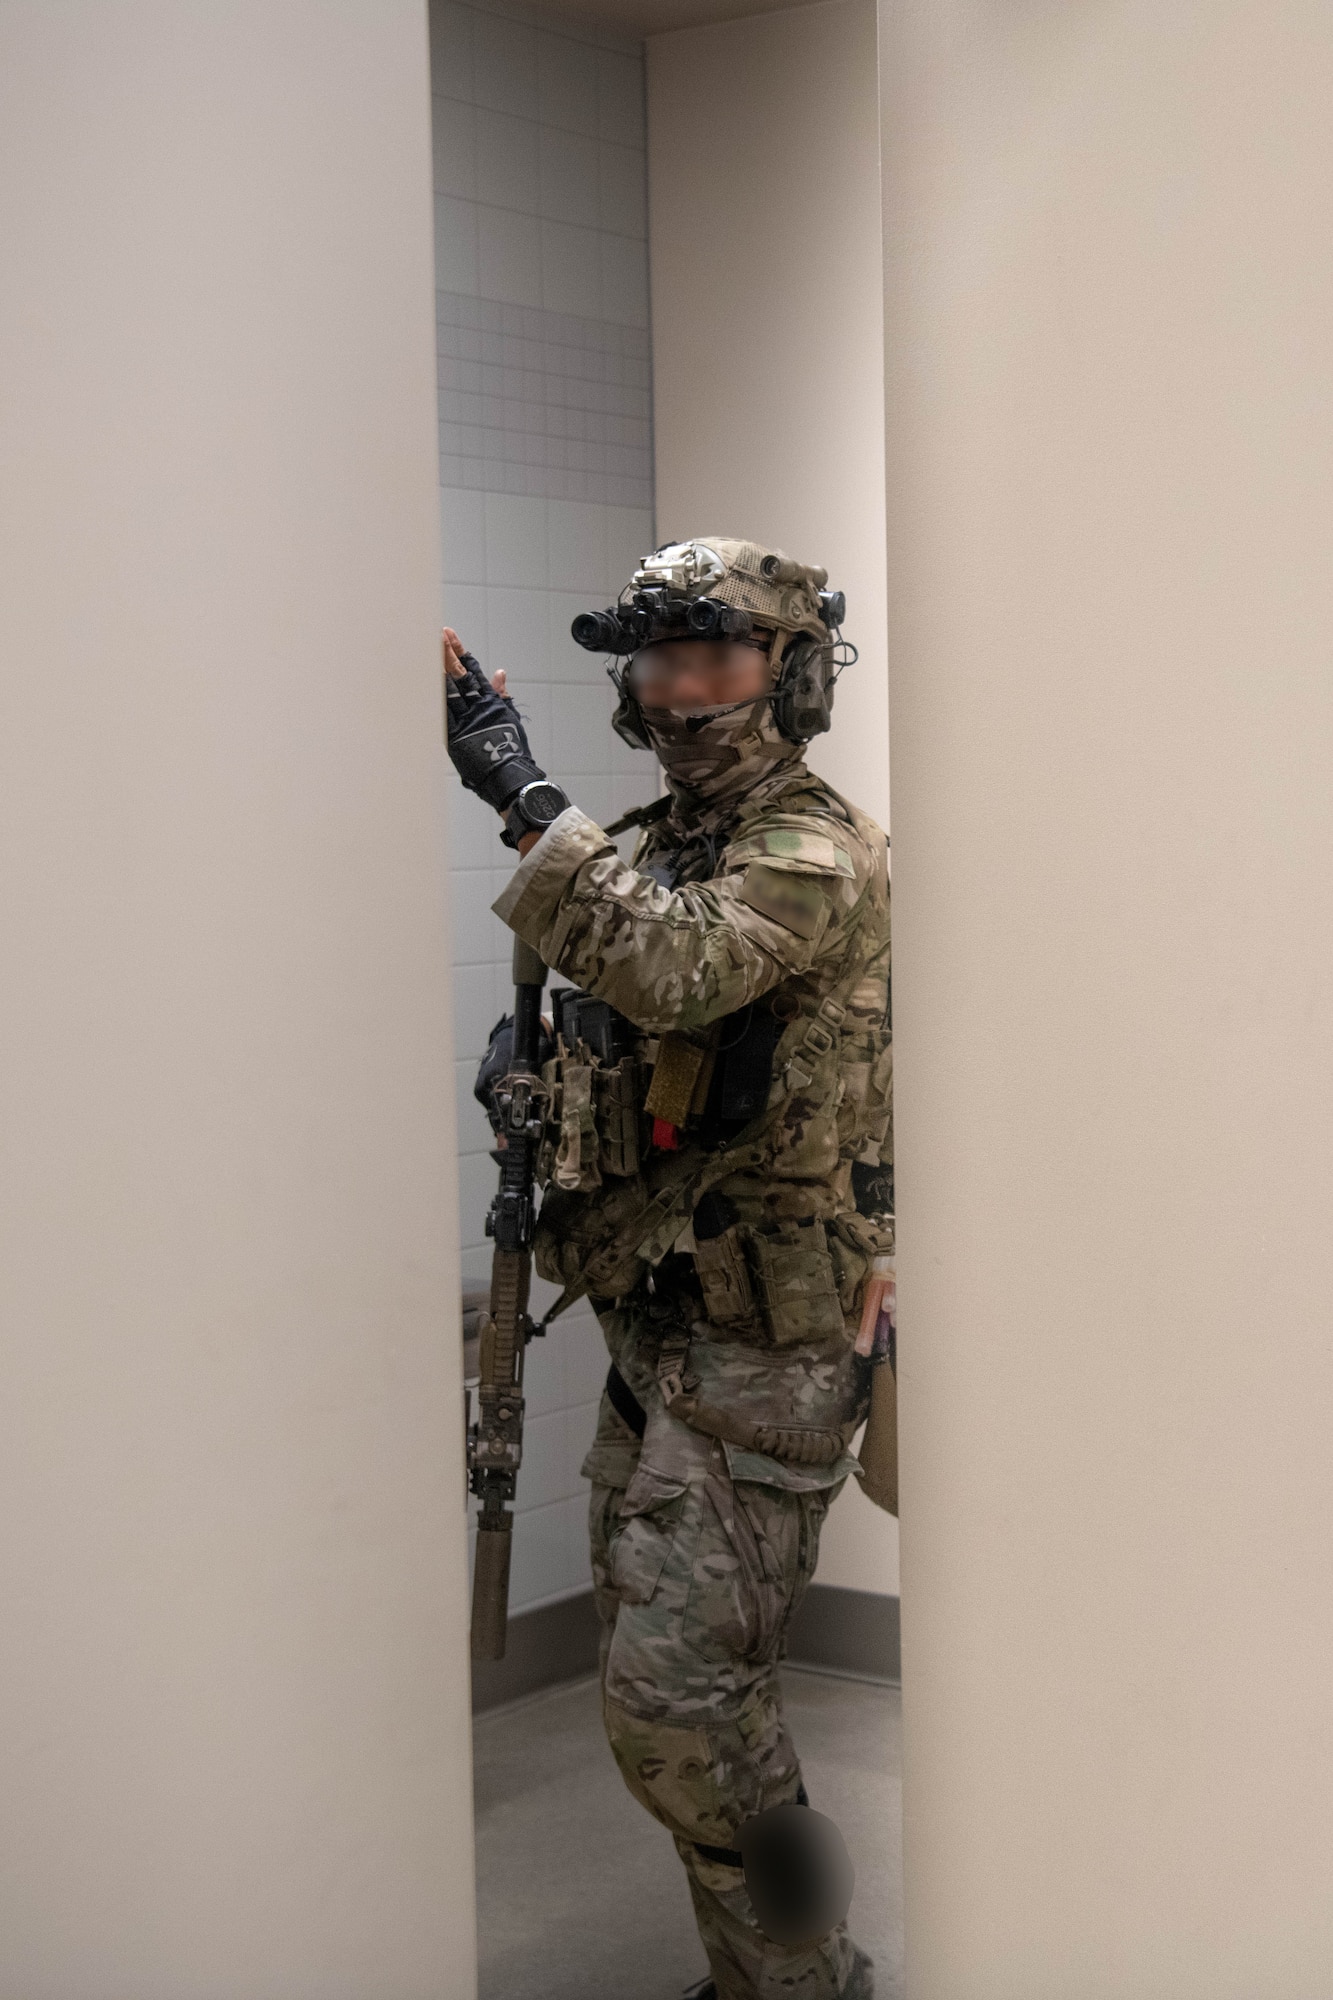 Green Beret secures bathroom.